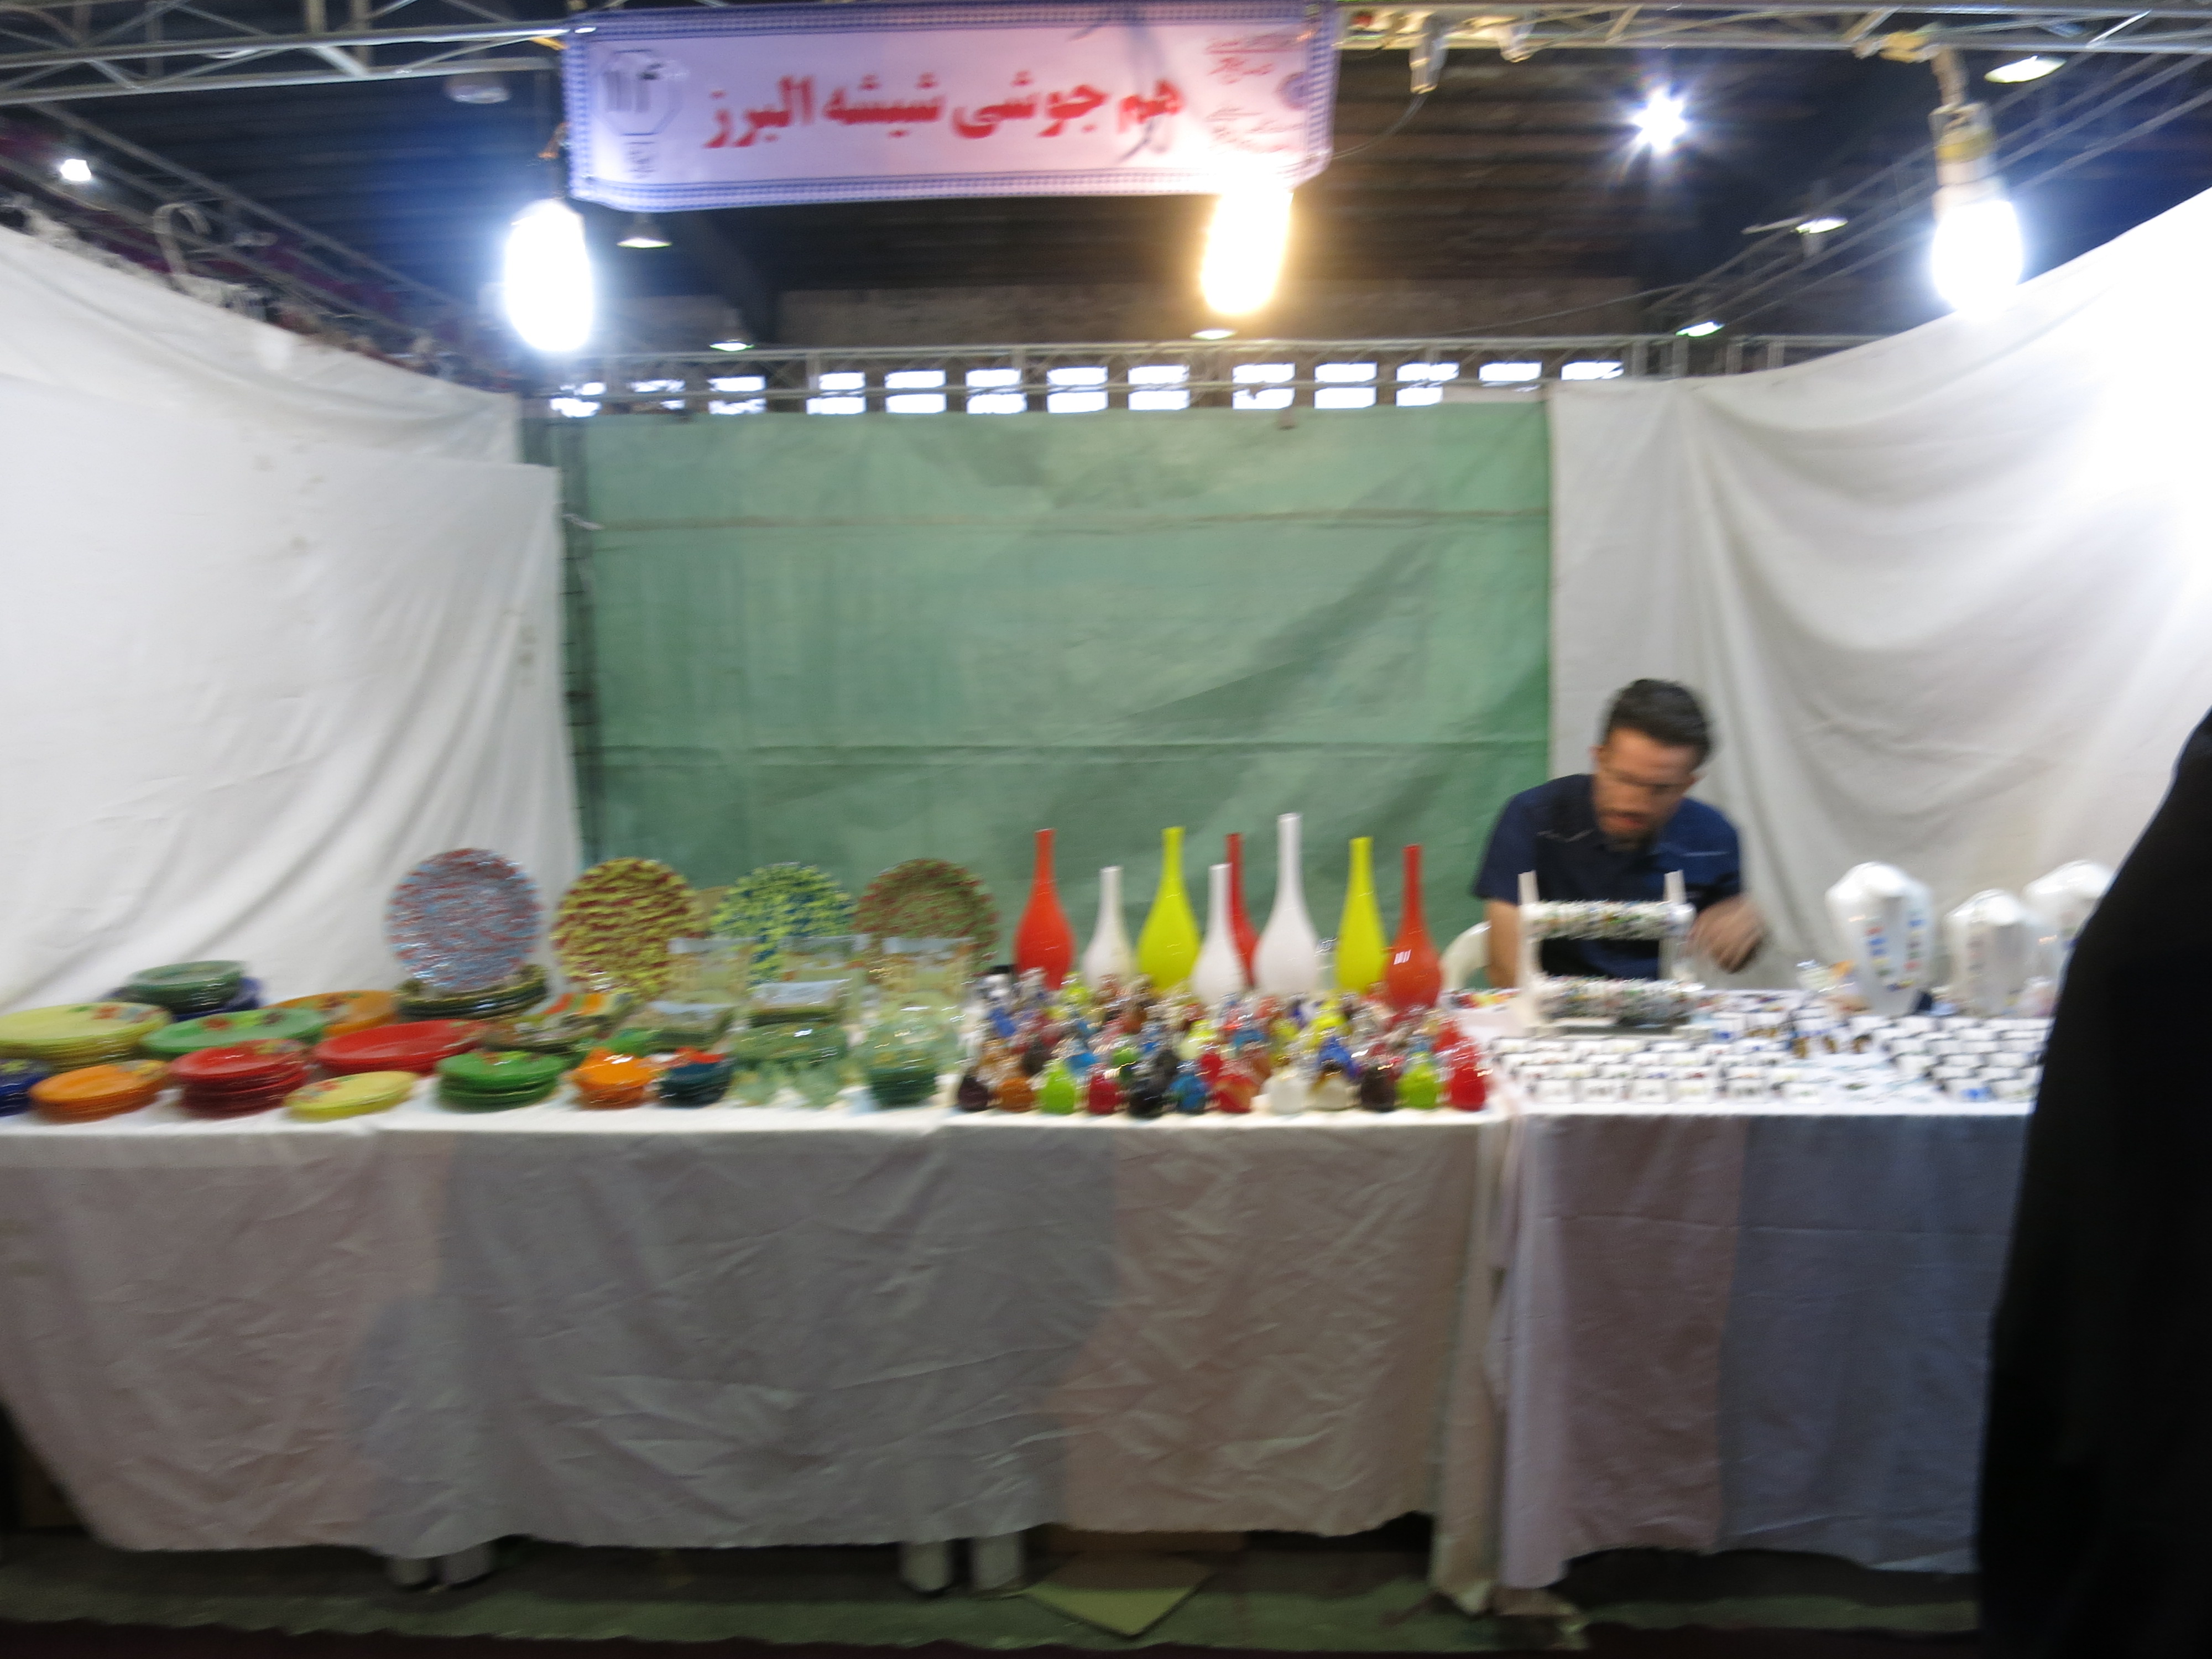 ماهنامه 7دانگ،نمایشگاه صنایع دستی، شیشه گری